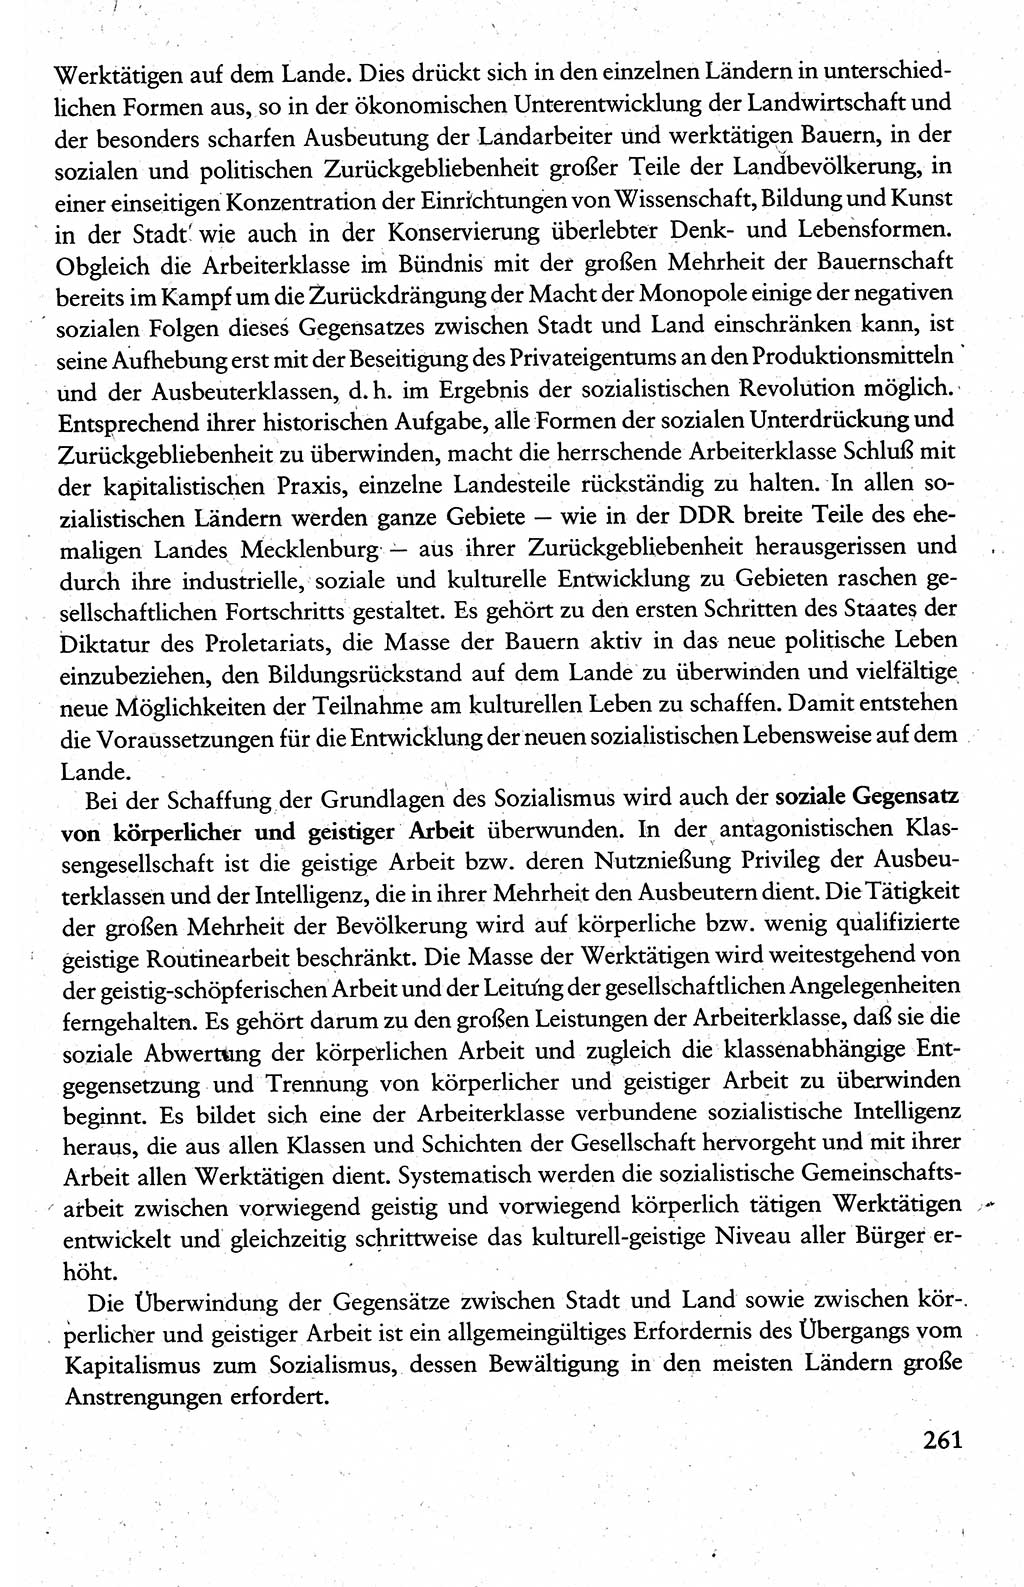 Wissenschaftlicher Kommunismus [Deutsche Demokratische Republik (DDR)], Lehrbuch für das marxistisch-leninistische Grundlagenstudium 1983, Seite 261 (Wiss. Komm. DDR Lb. 1983, S. 261)